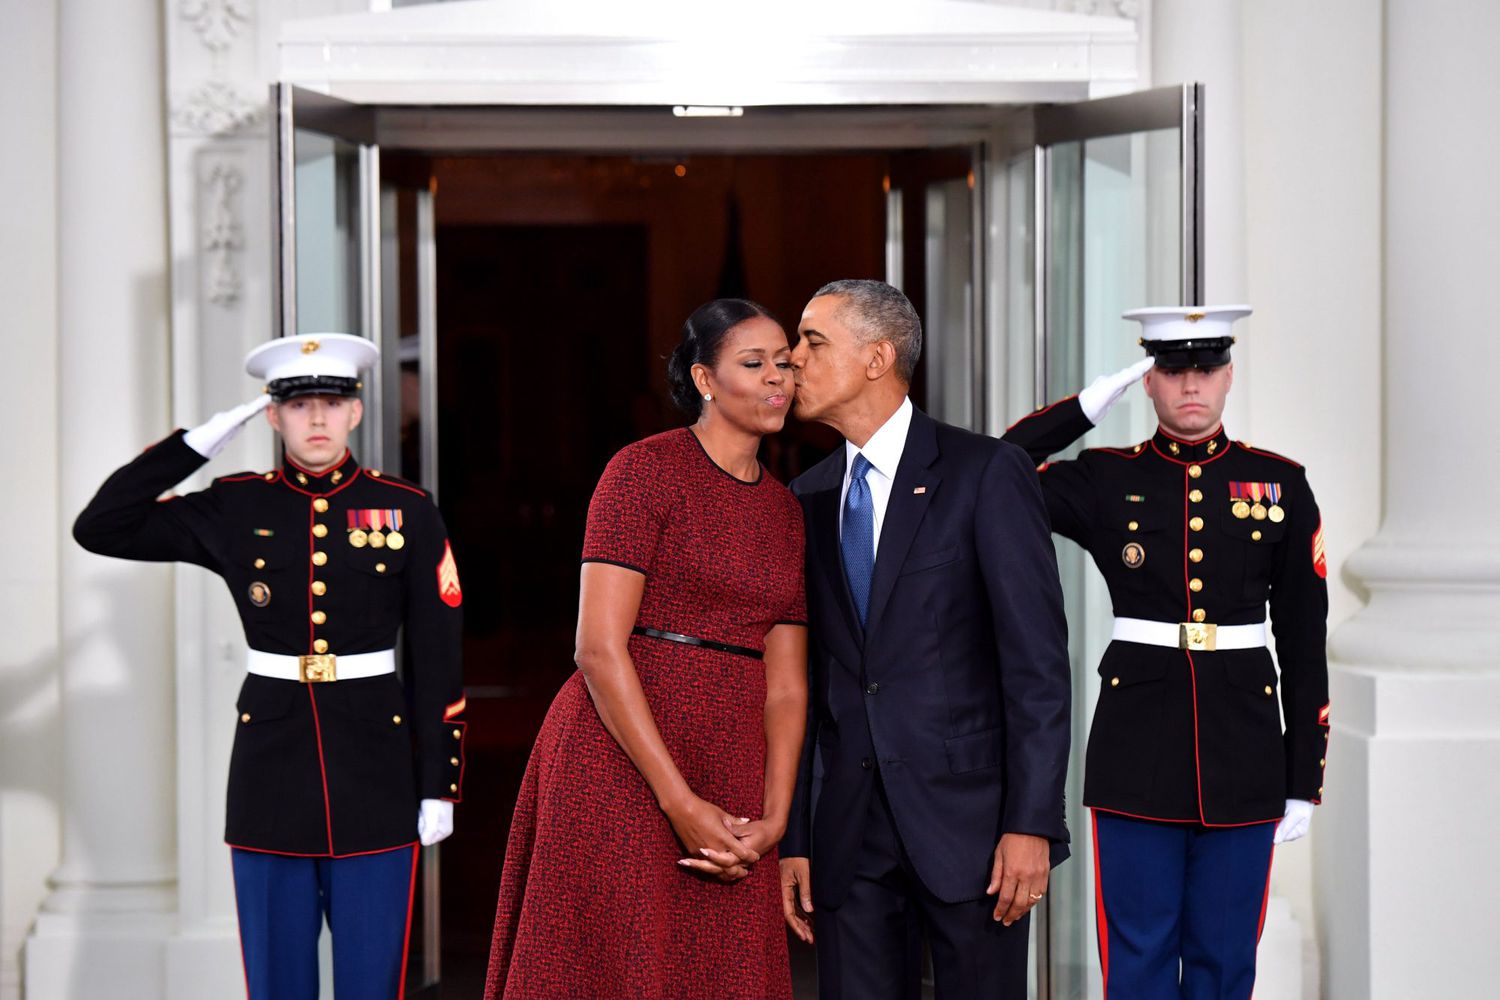 barack obama and michelle obama kiss on cheek